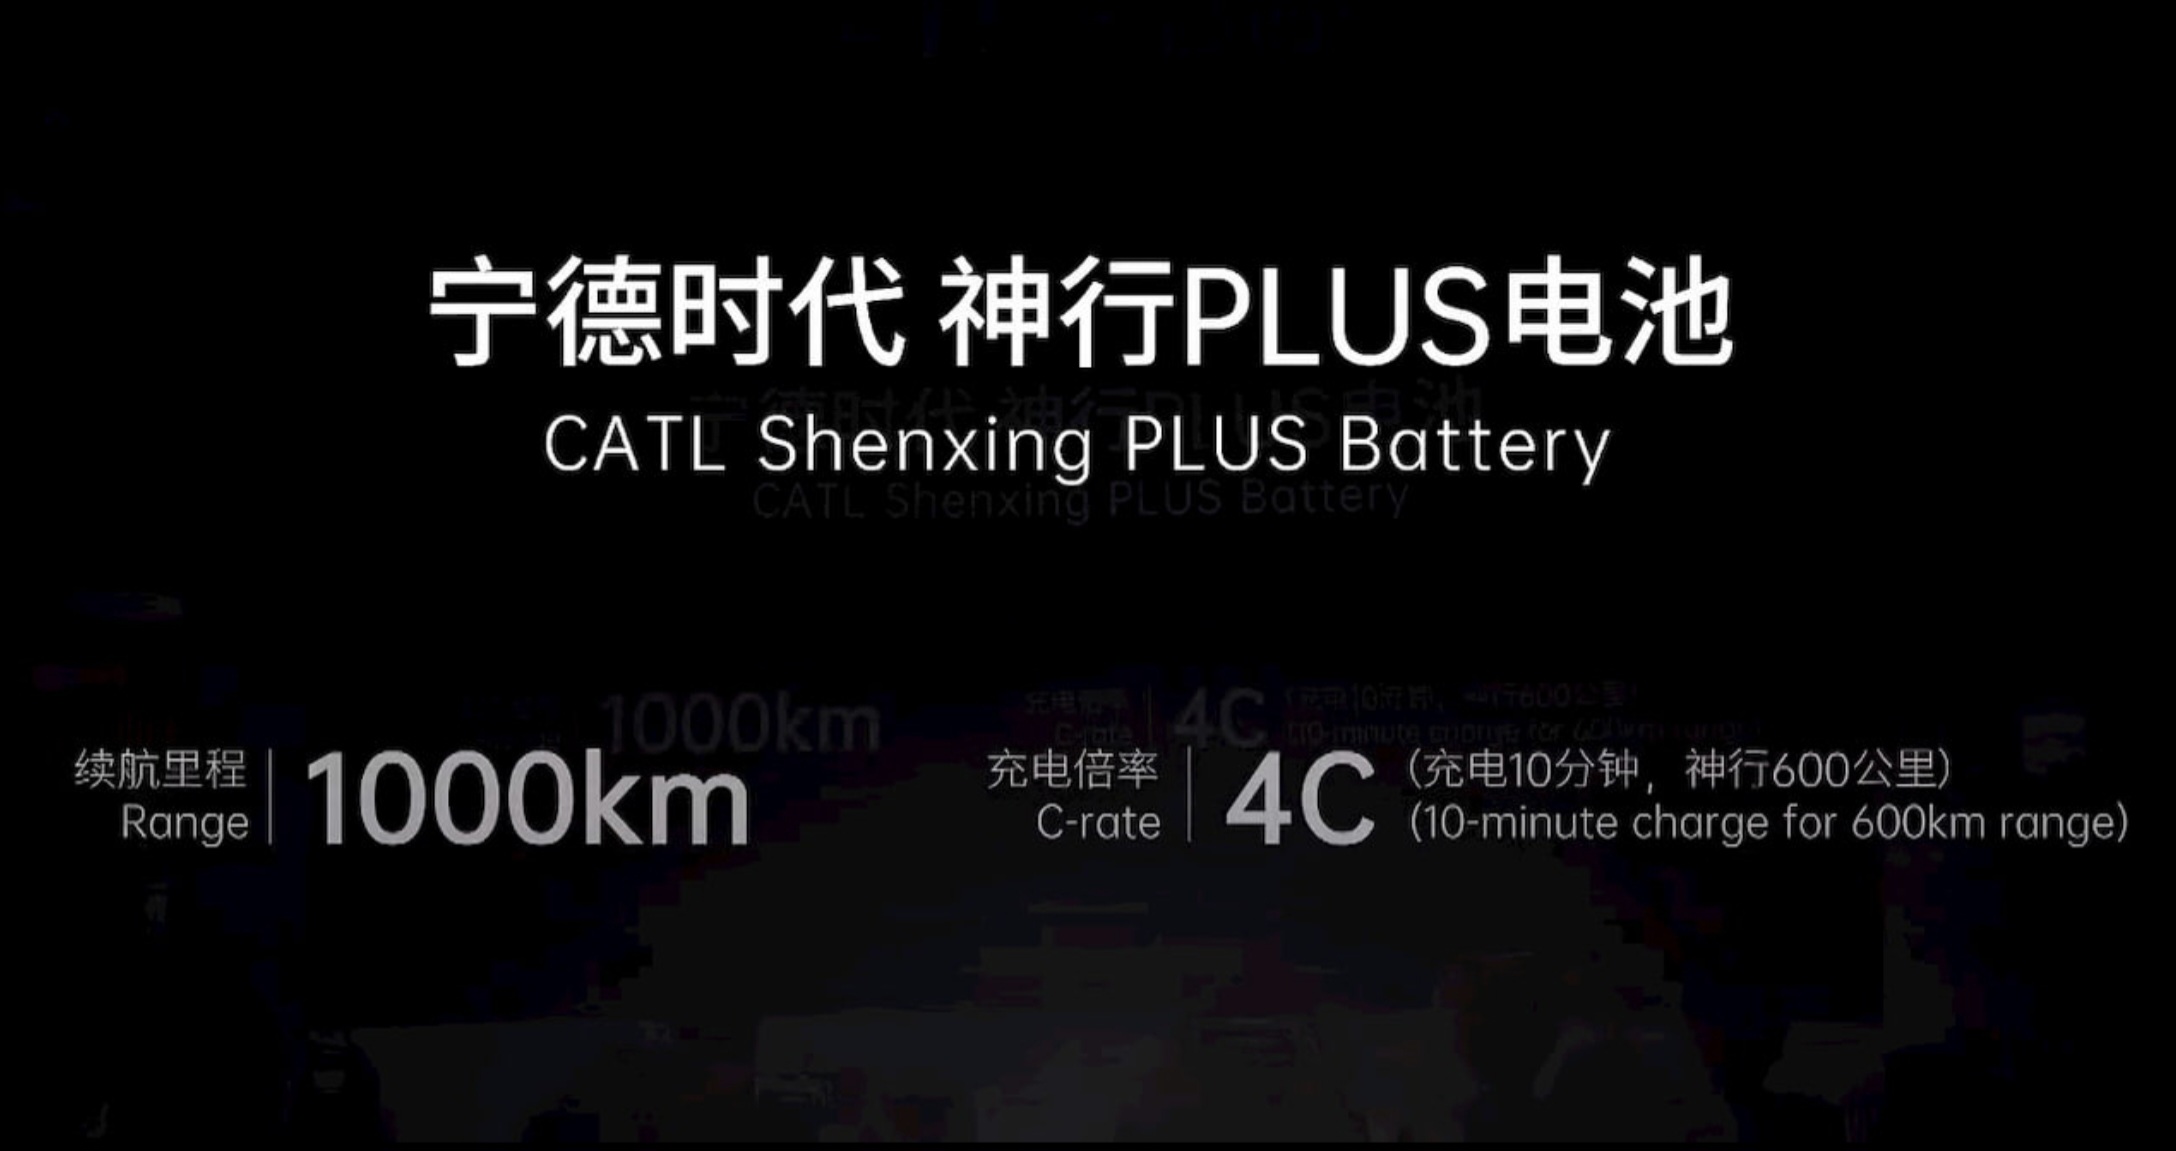 Новая батарея LFP от CATL обеспечивает электромобилям запас хода в 1000 км и 10-минутную зарядку.